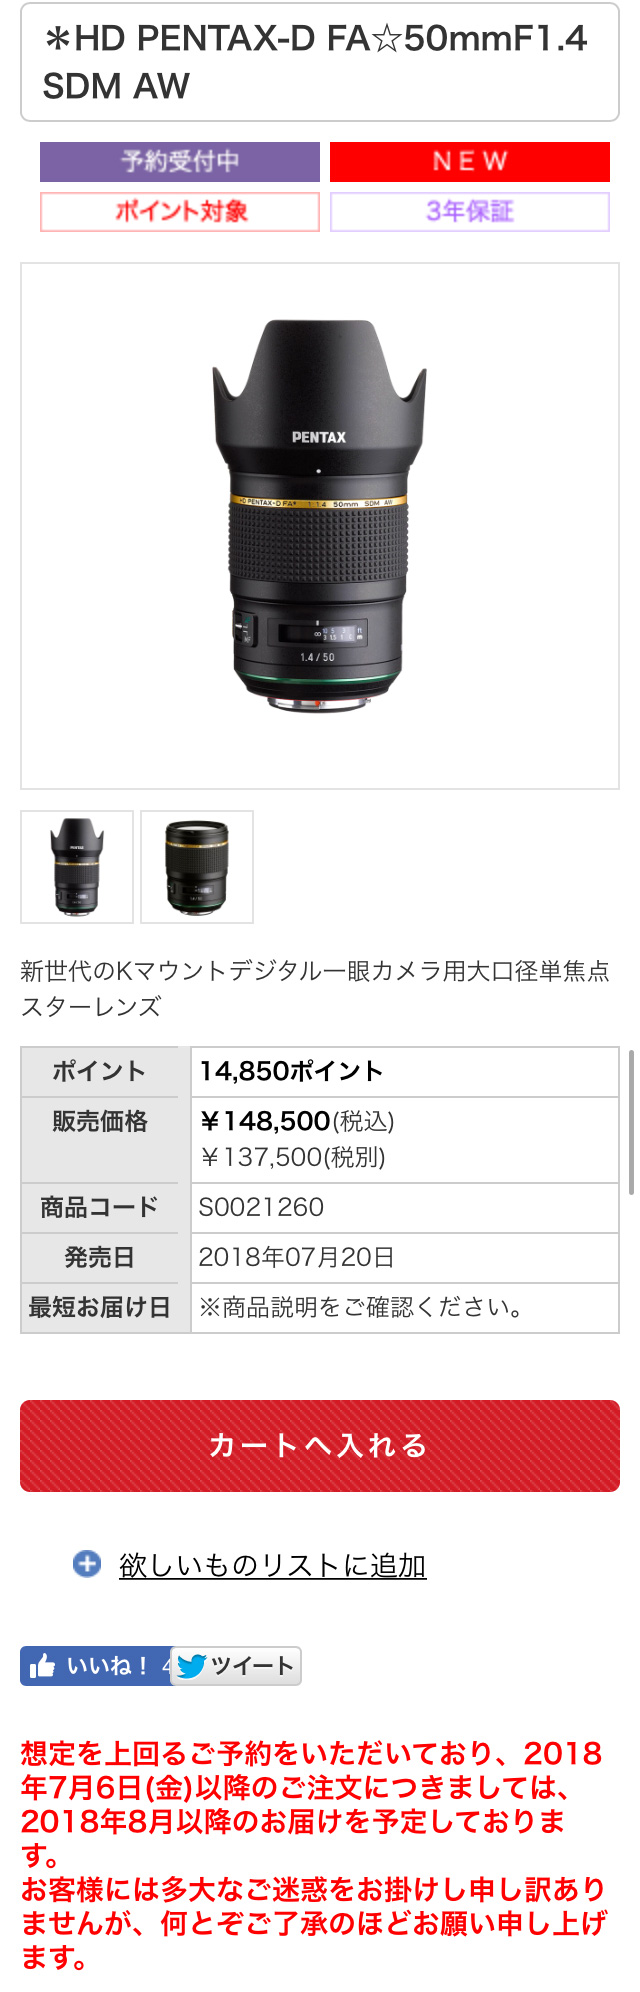 HD PENTAX-D FA☆50mmF1.4 SDM AW